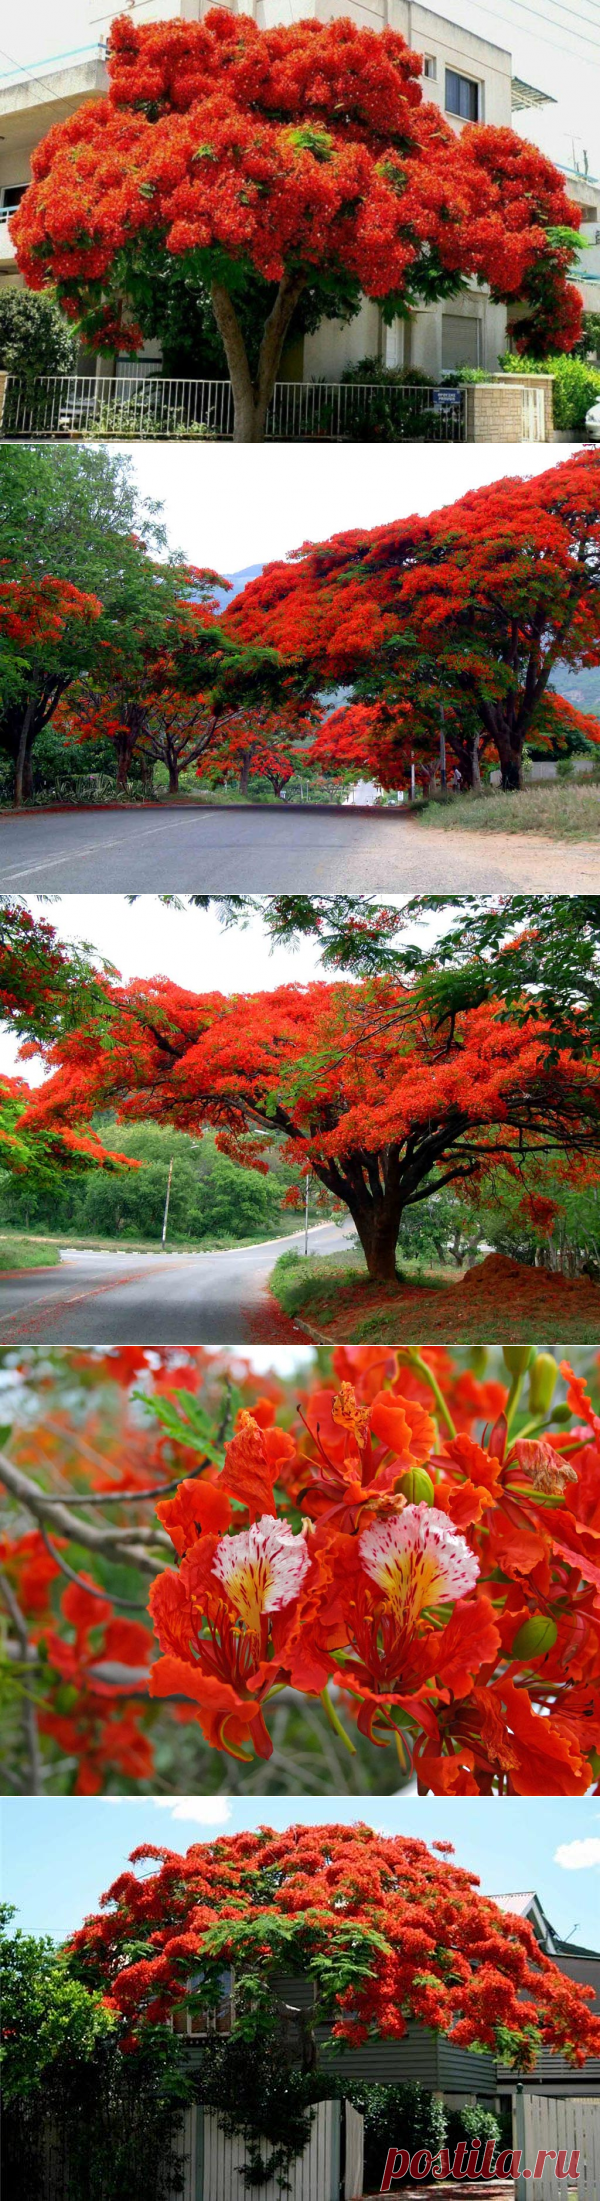 Делоникс королевский или Огненное дерево - дерево родом с Мадагаскара семейства Бобовые, подсемейство Цезальпиниевые.
Как это дерево только ни называют: дерево-пожар, пламенное дерево, хвост Феникса, огненное дерево, дерево-пламя. И действительно, дерево выглядит именно так, благодаря ярко-красным цветам